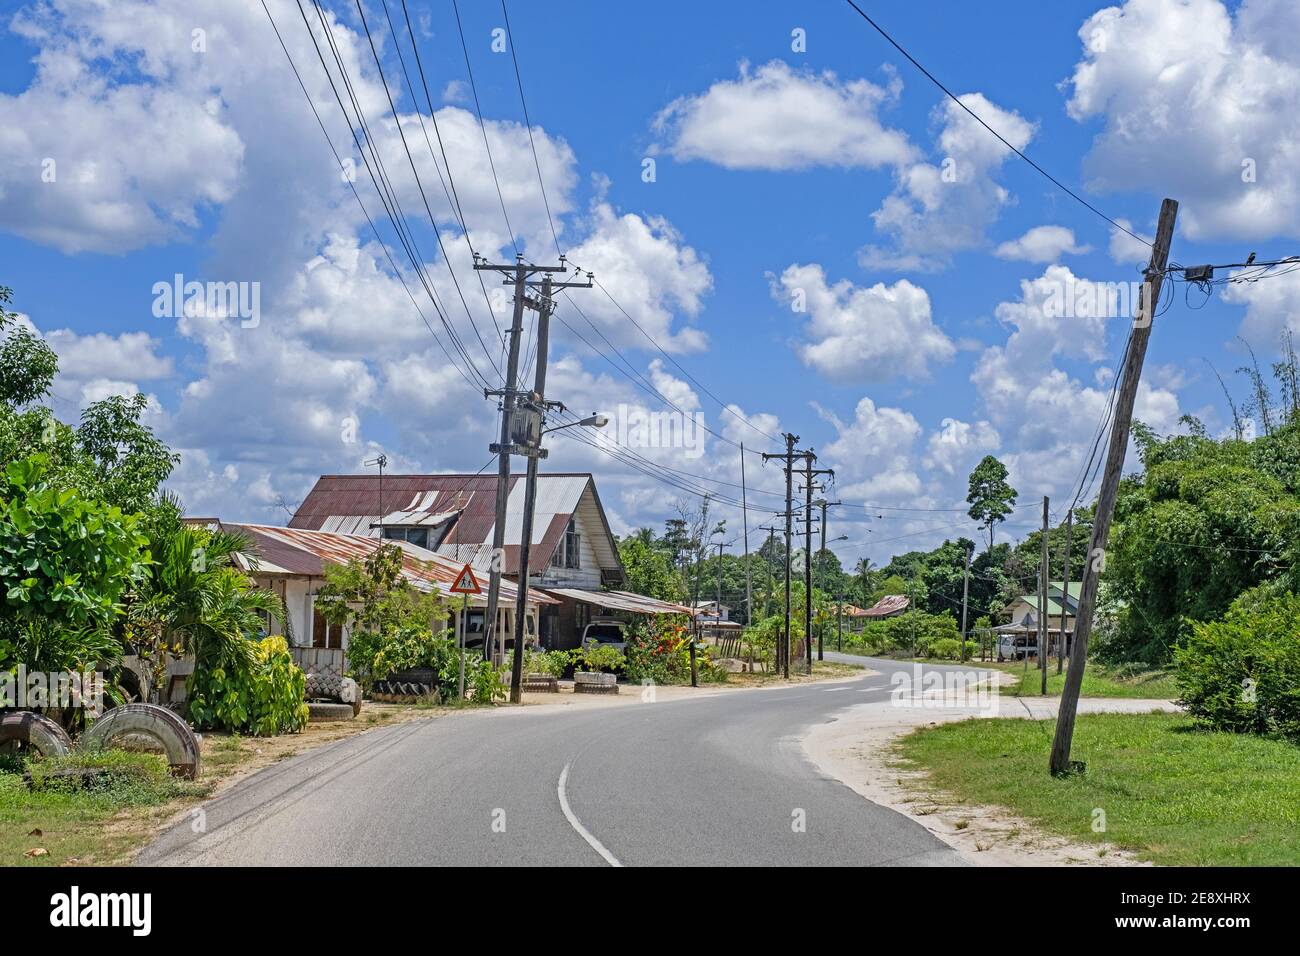 Route de campagne traversant le village de Groningen dans le district de Saramacca, Suriname / Surinam Banque D'Images